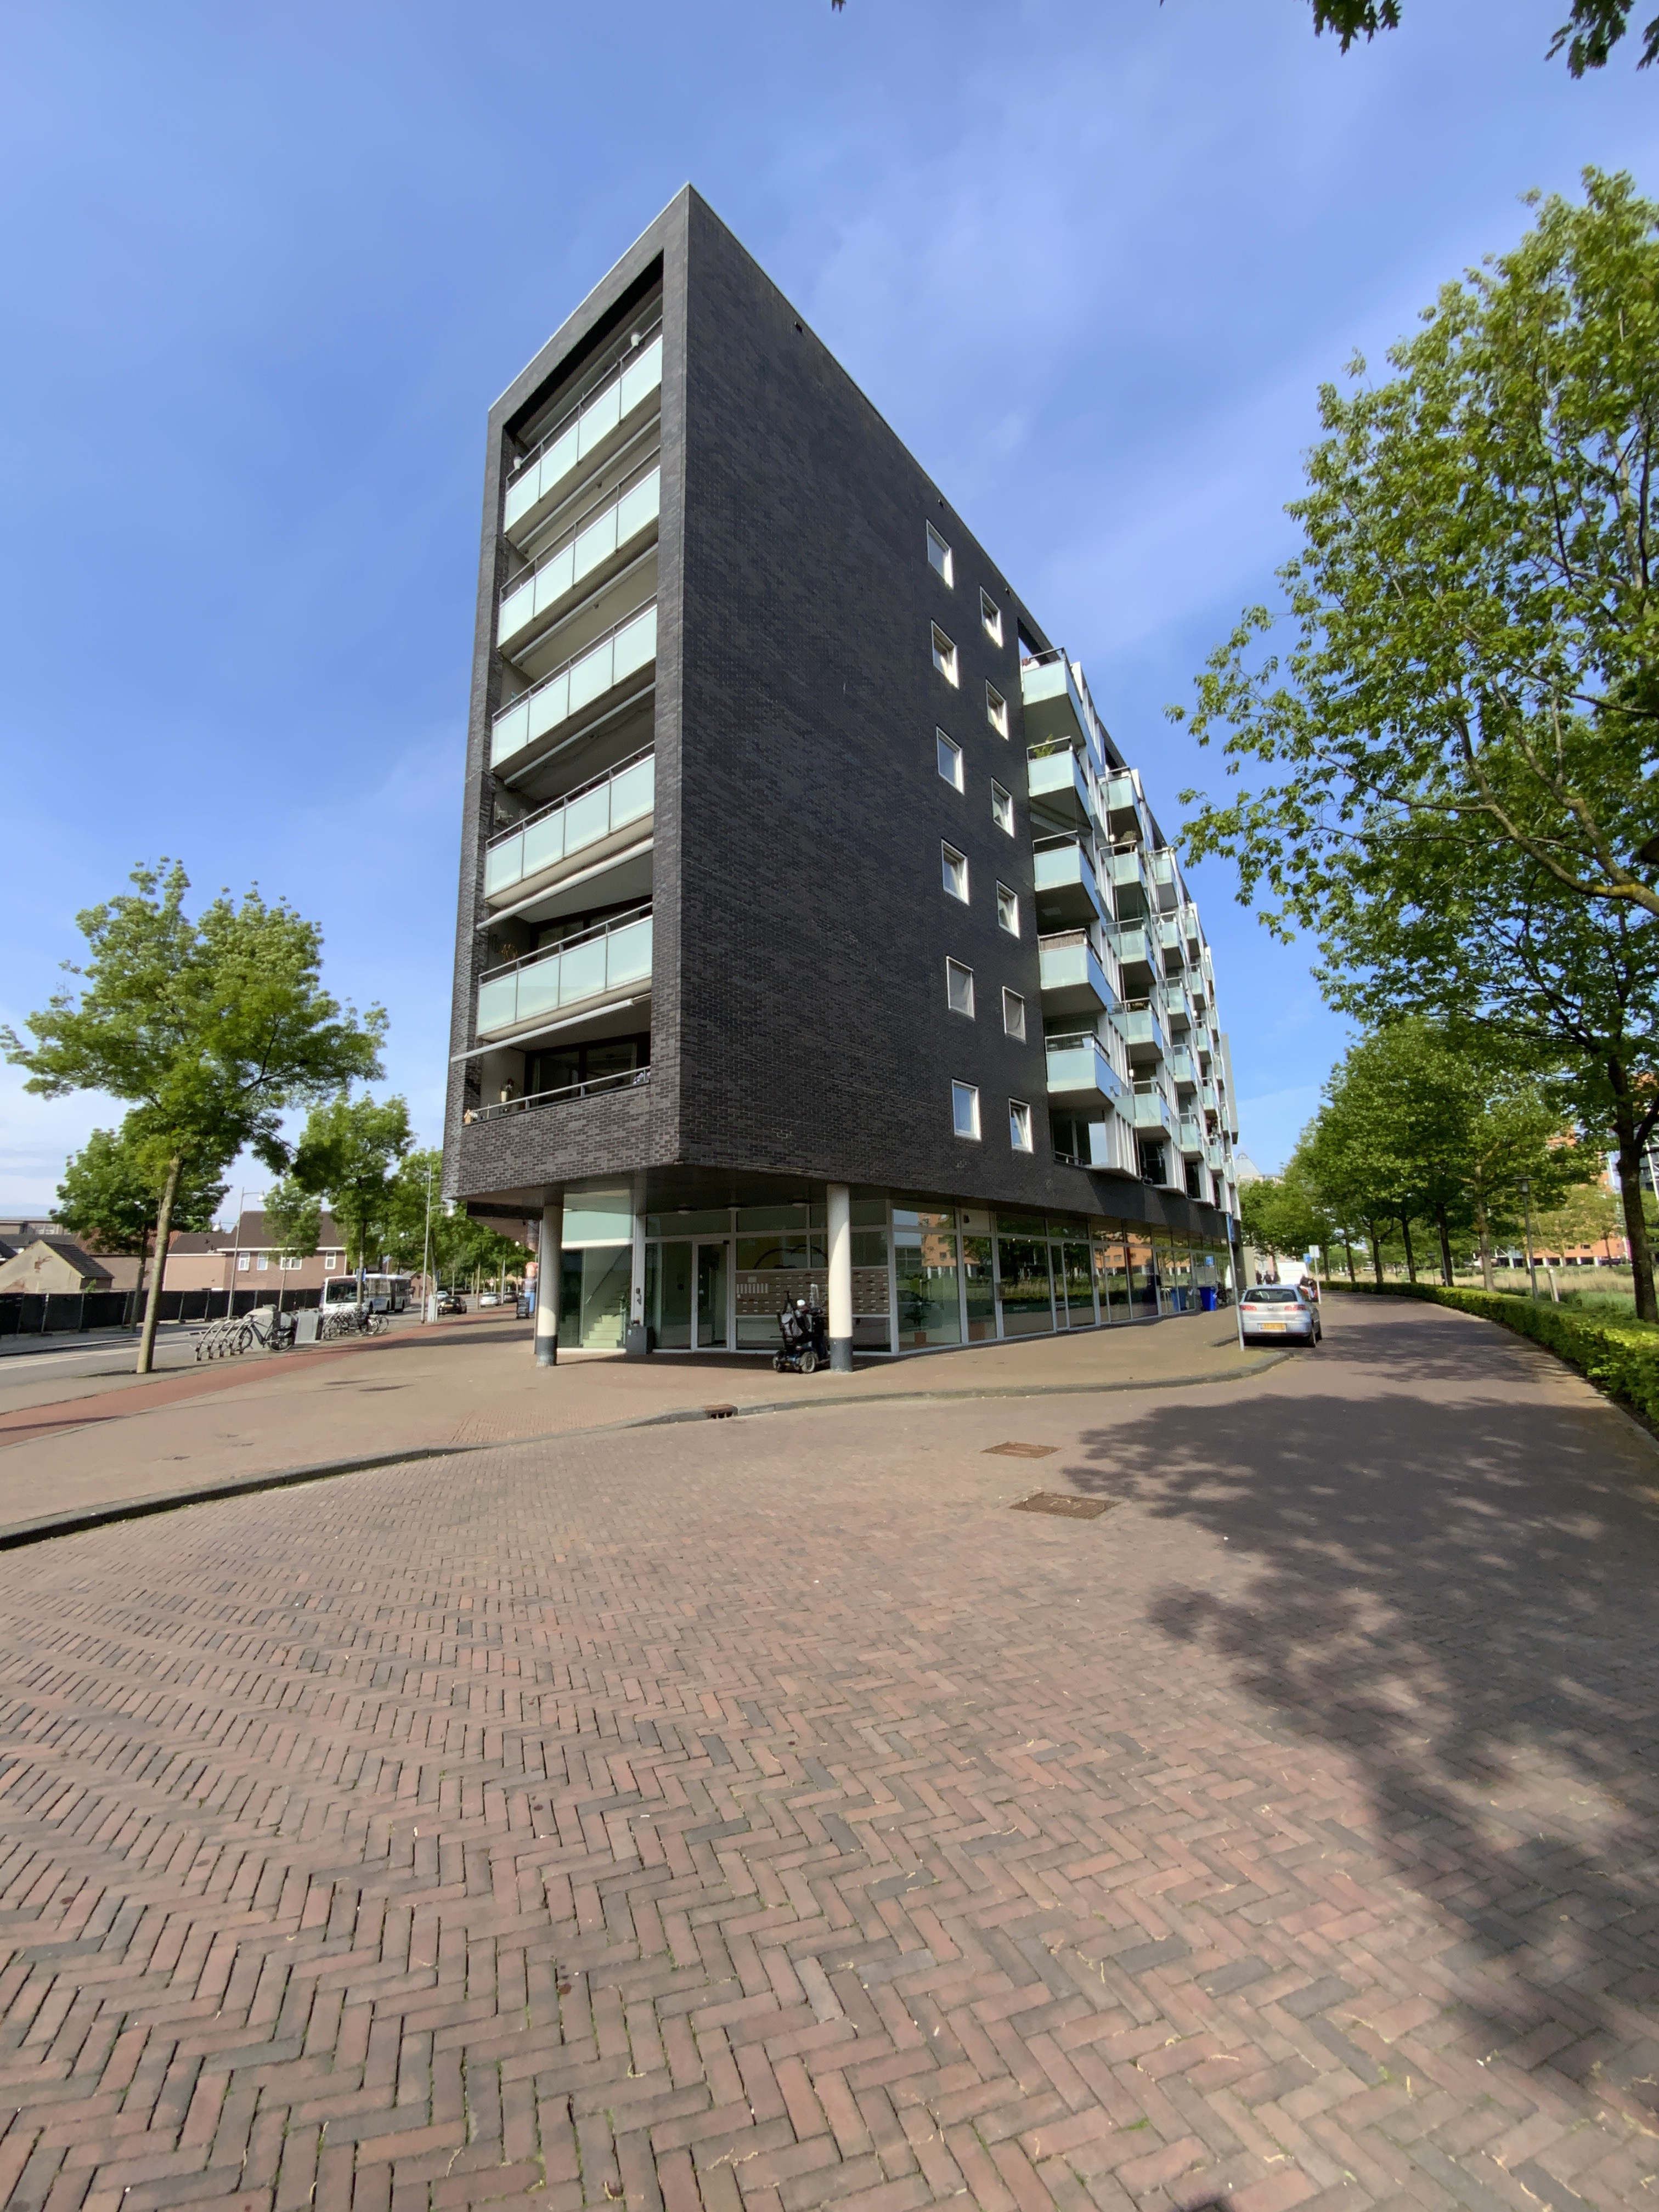 Molenstraat-Centrum 617, 7311 XN Apeldoorn, Nederland